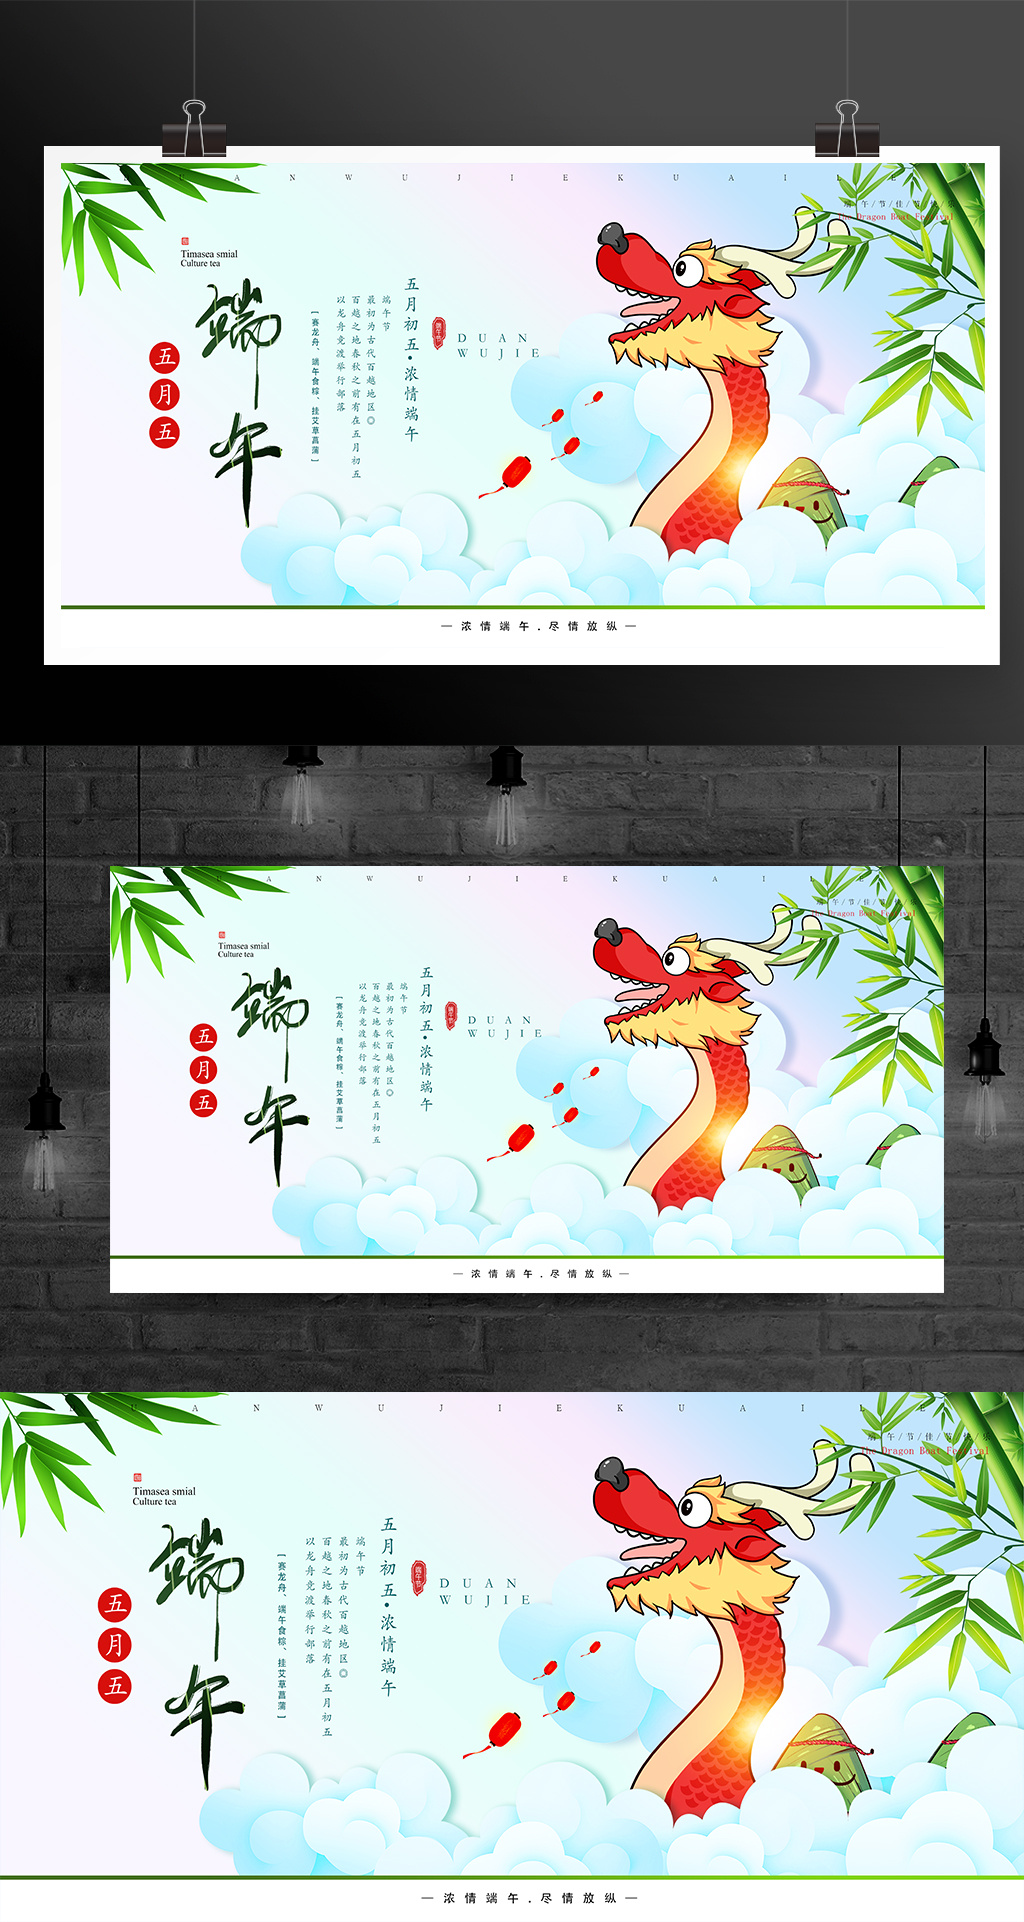 中国传统节日端午节活动海报展板模板